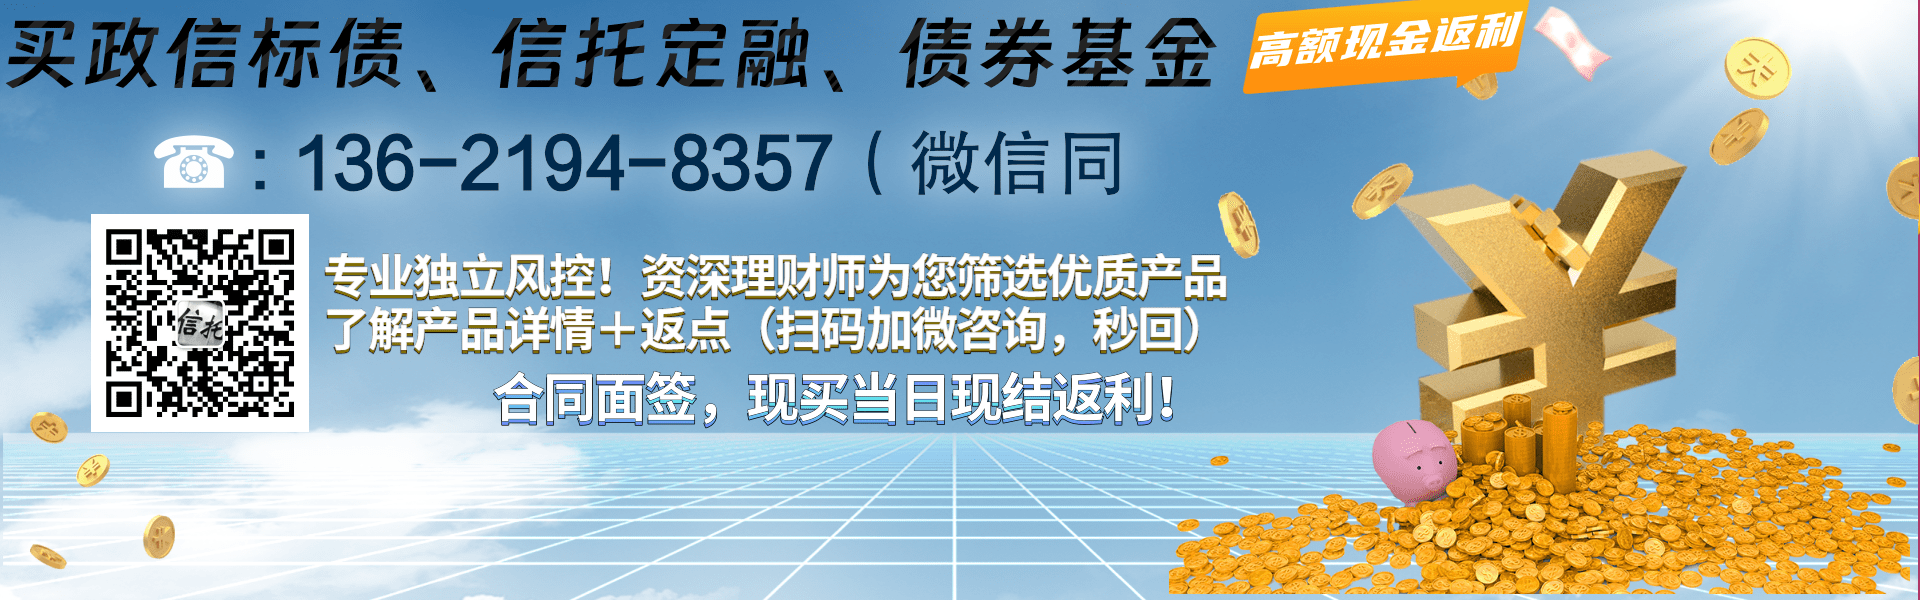 重庆九黎旅游控股债权资产项目